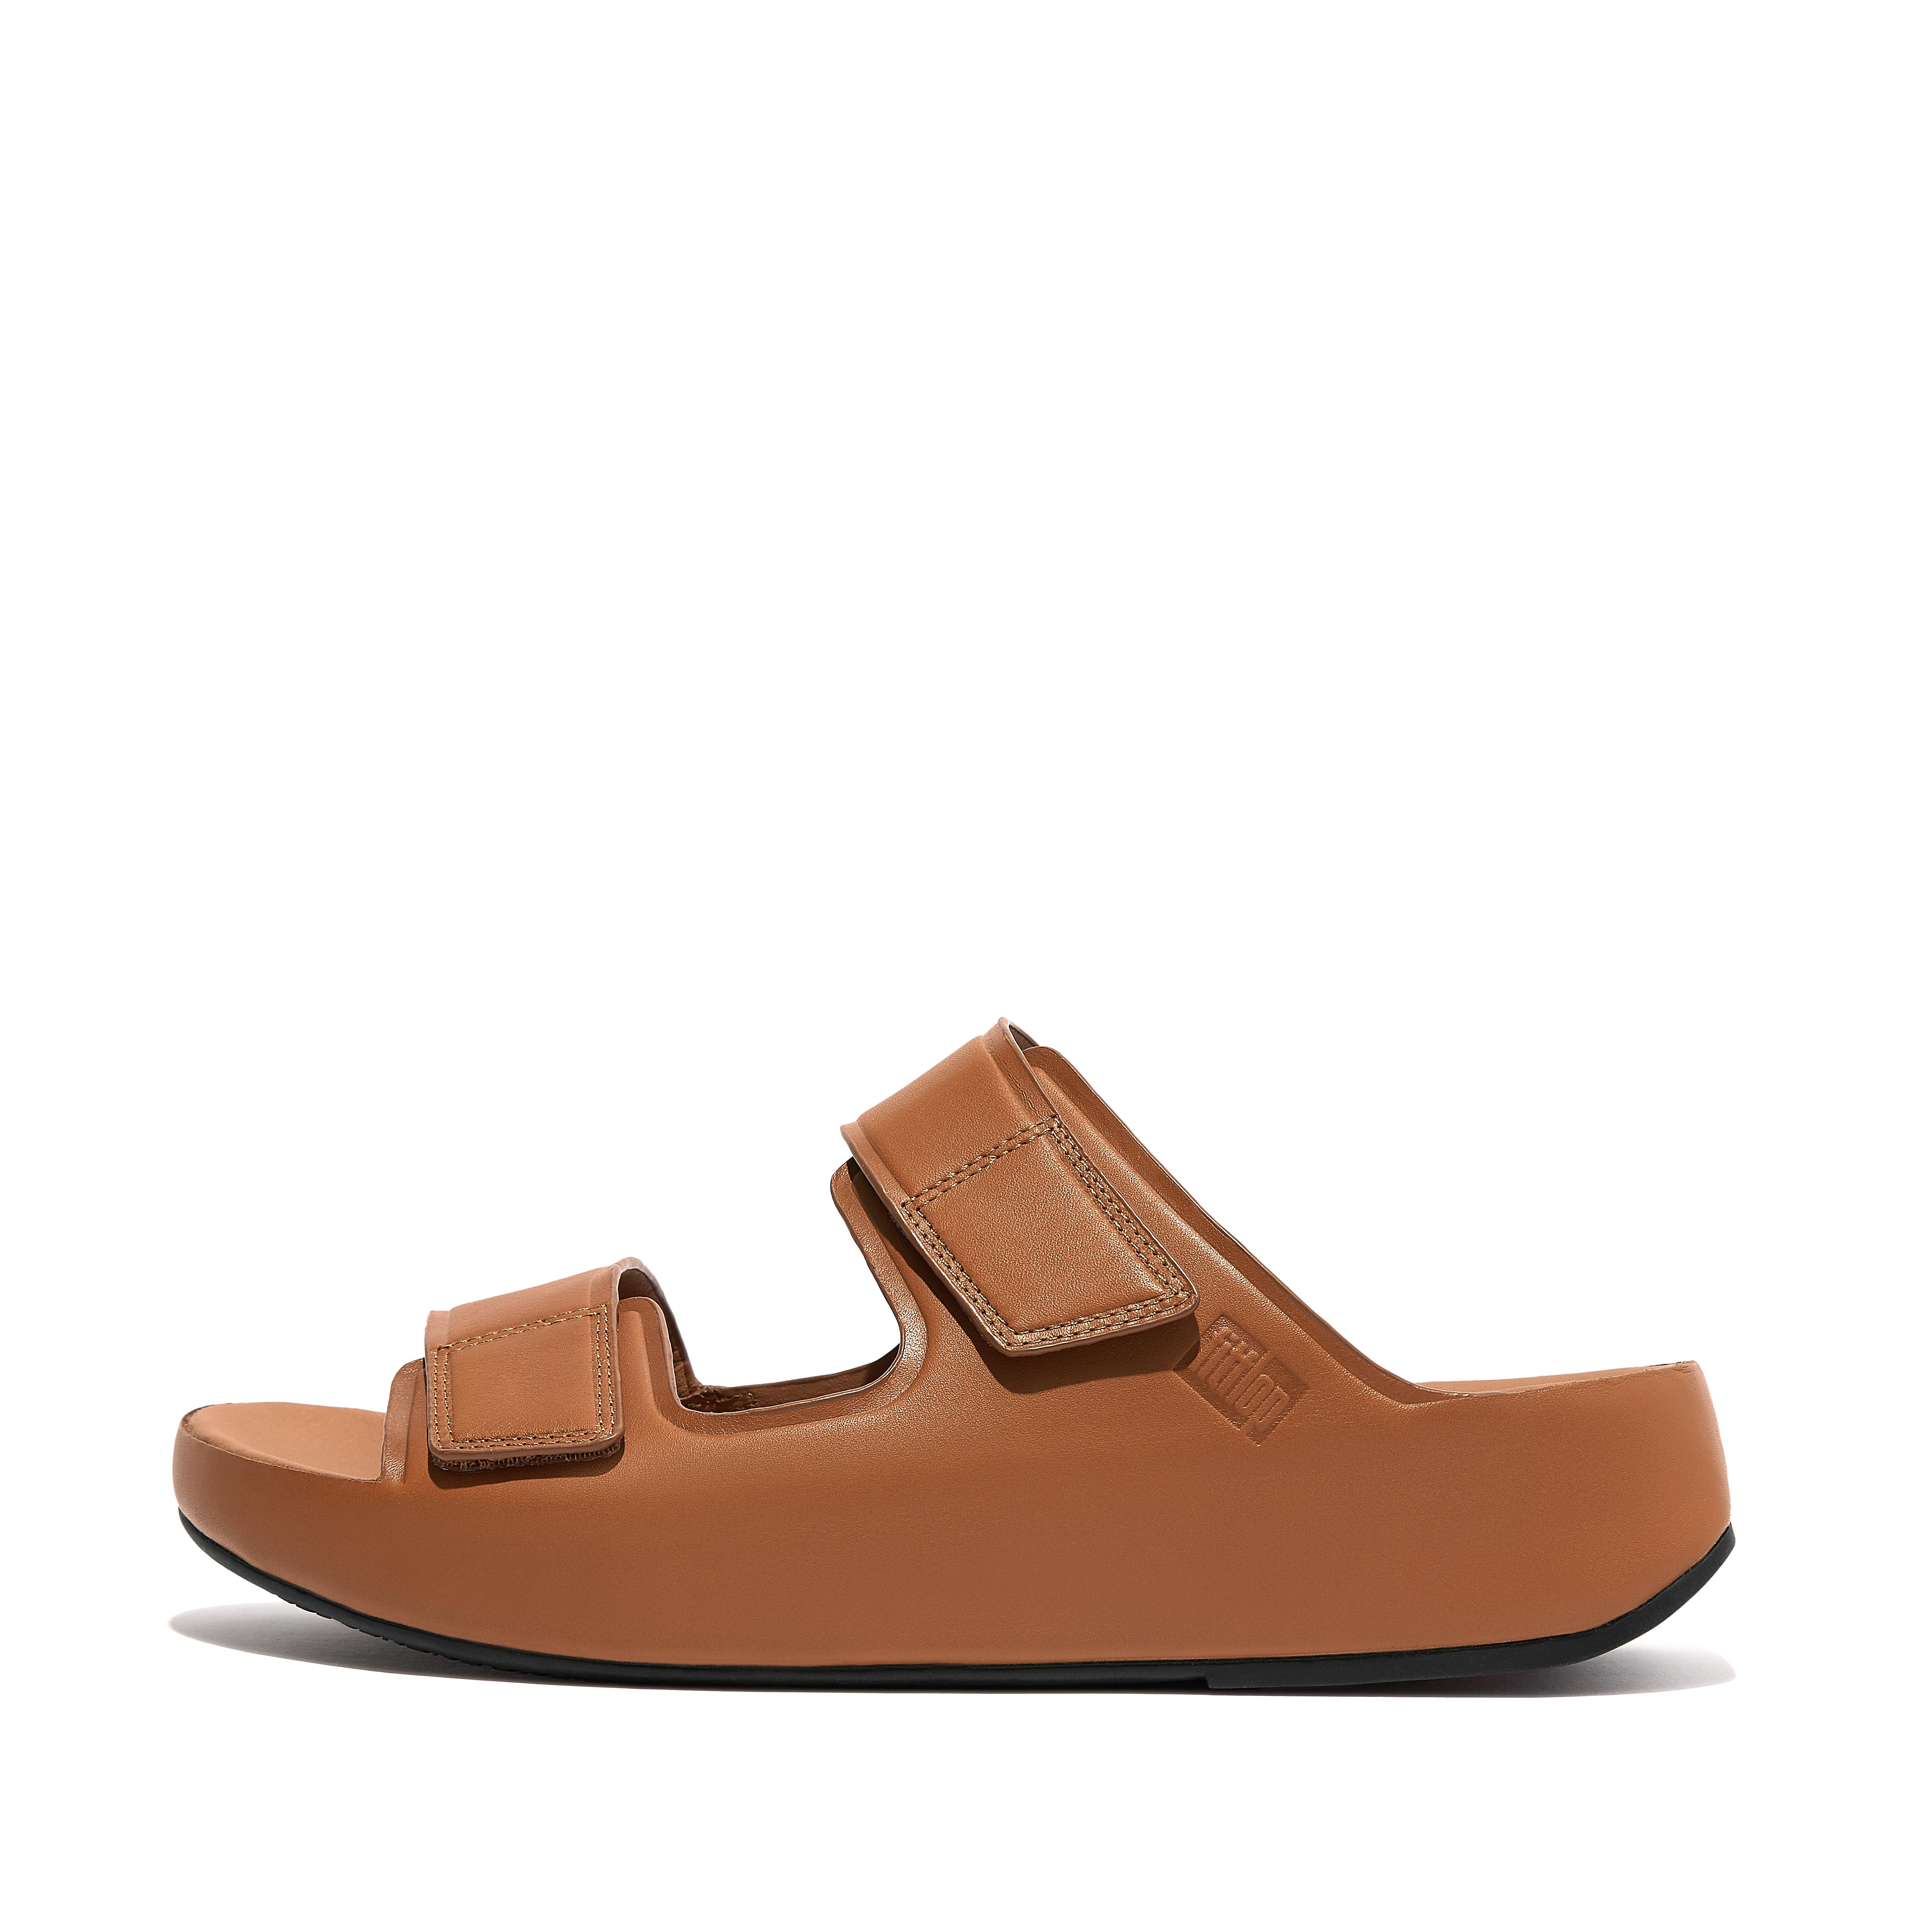 핏플랍 슬리퍼 핏플랍 Fitflop Adjustable Leather Slides,Light Tan